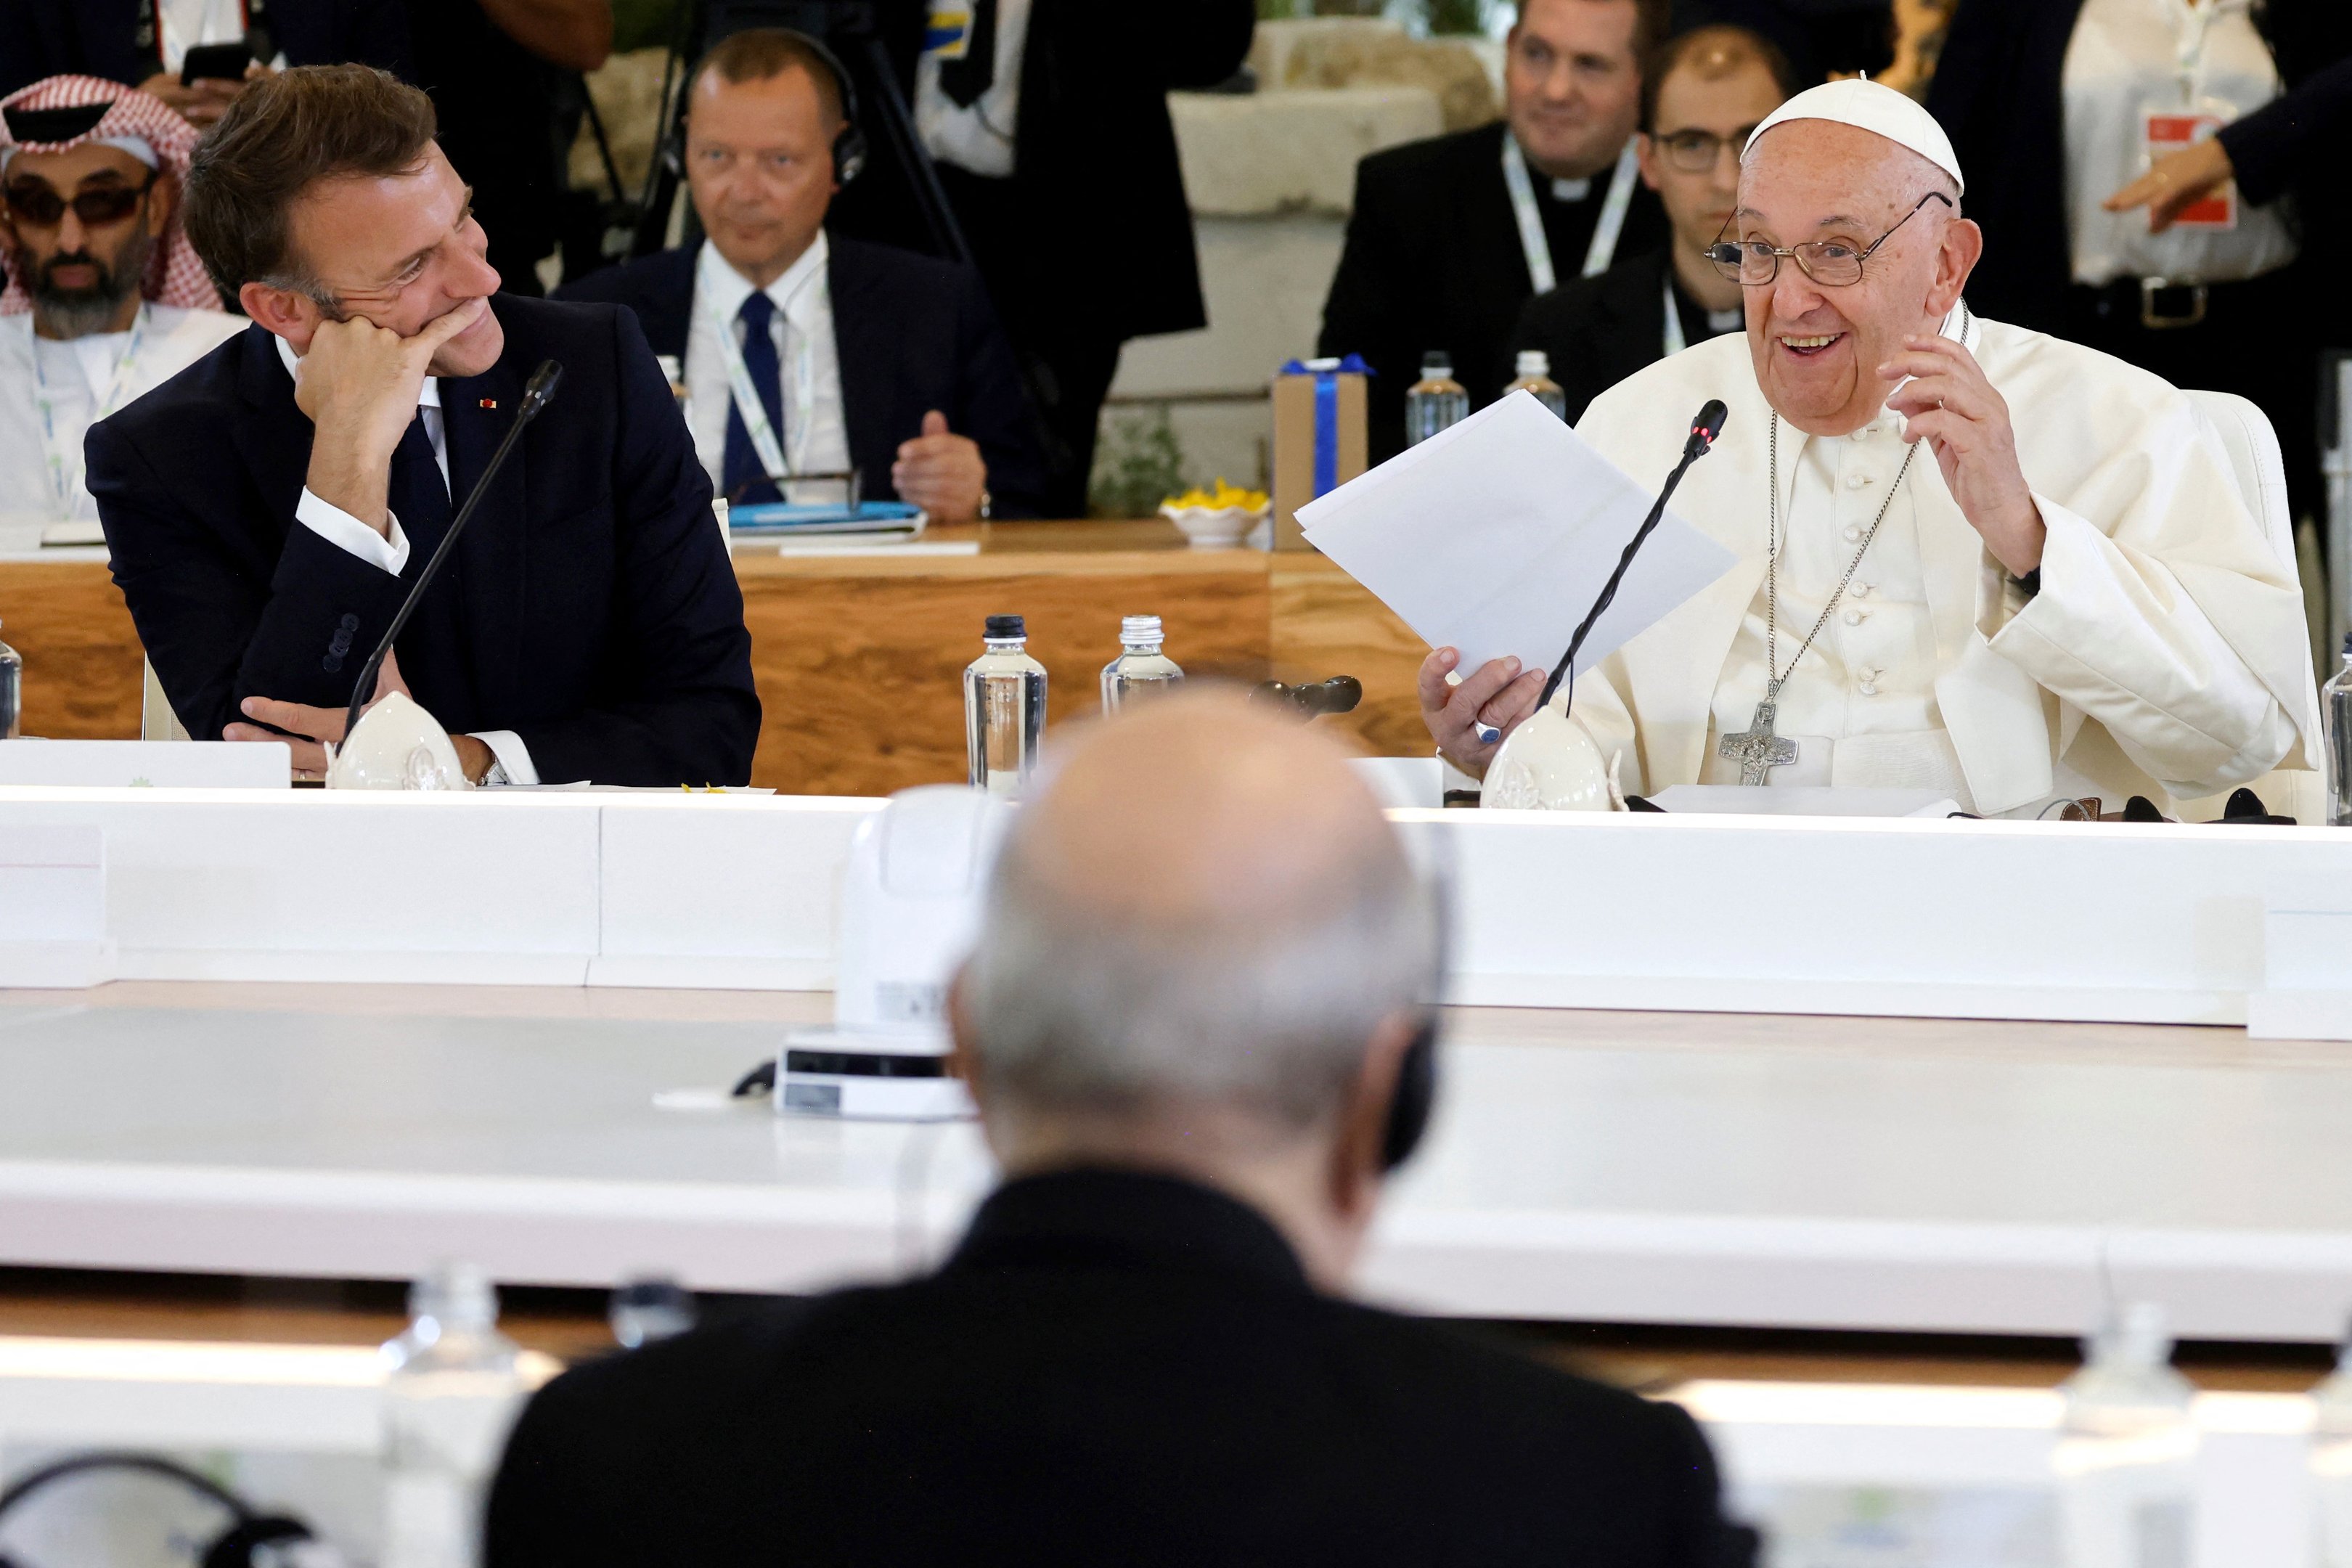 O presidente da França, Emmanuel Macron, e o papa Francisco, durante reunião do G7 em Bari, na Itália, em 14 de junho